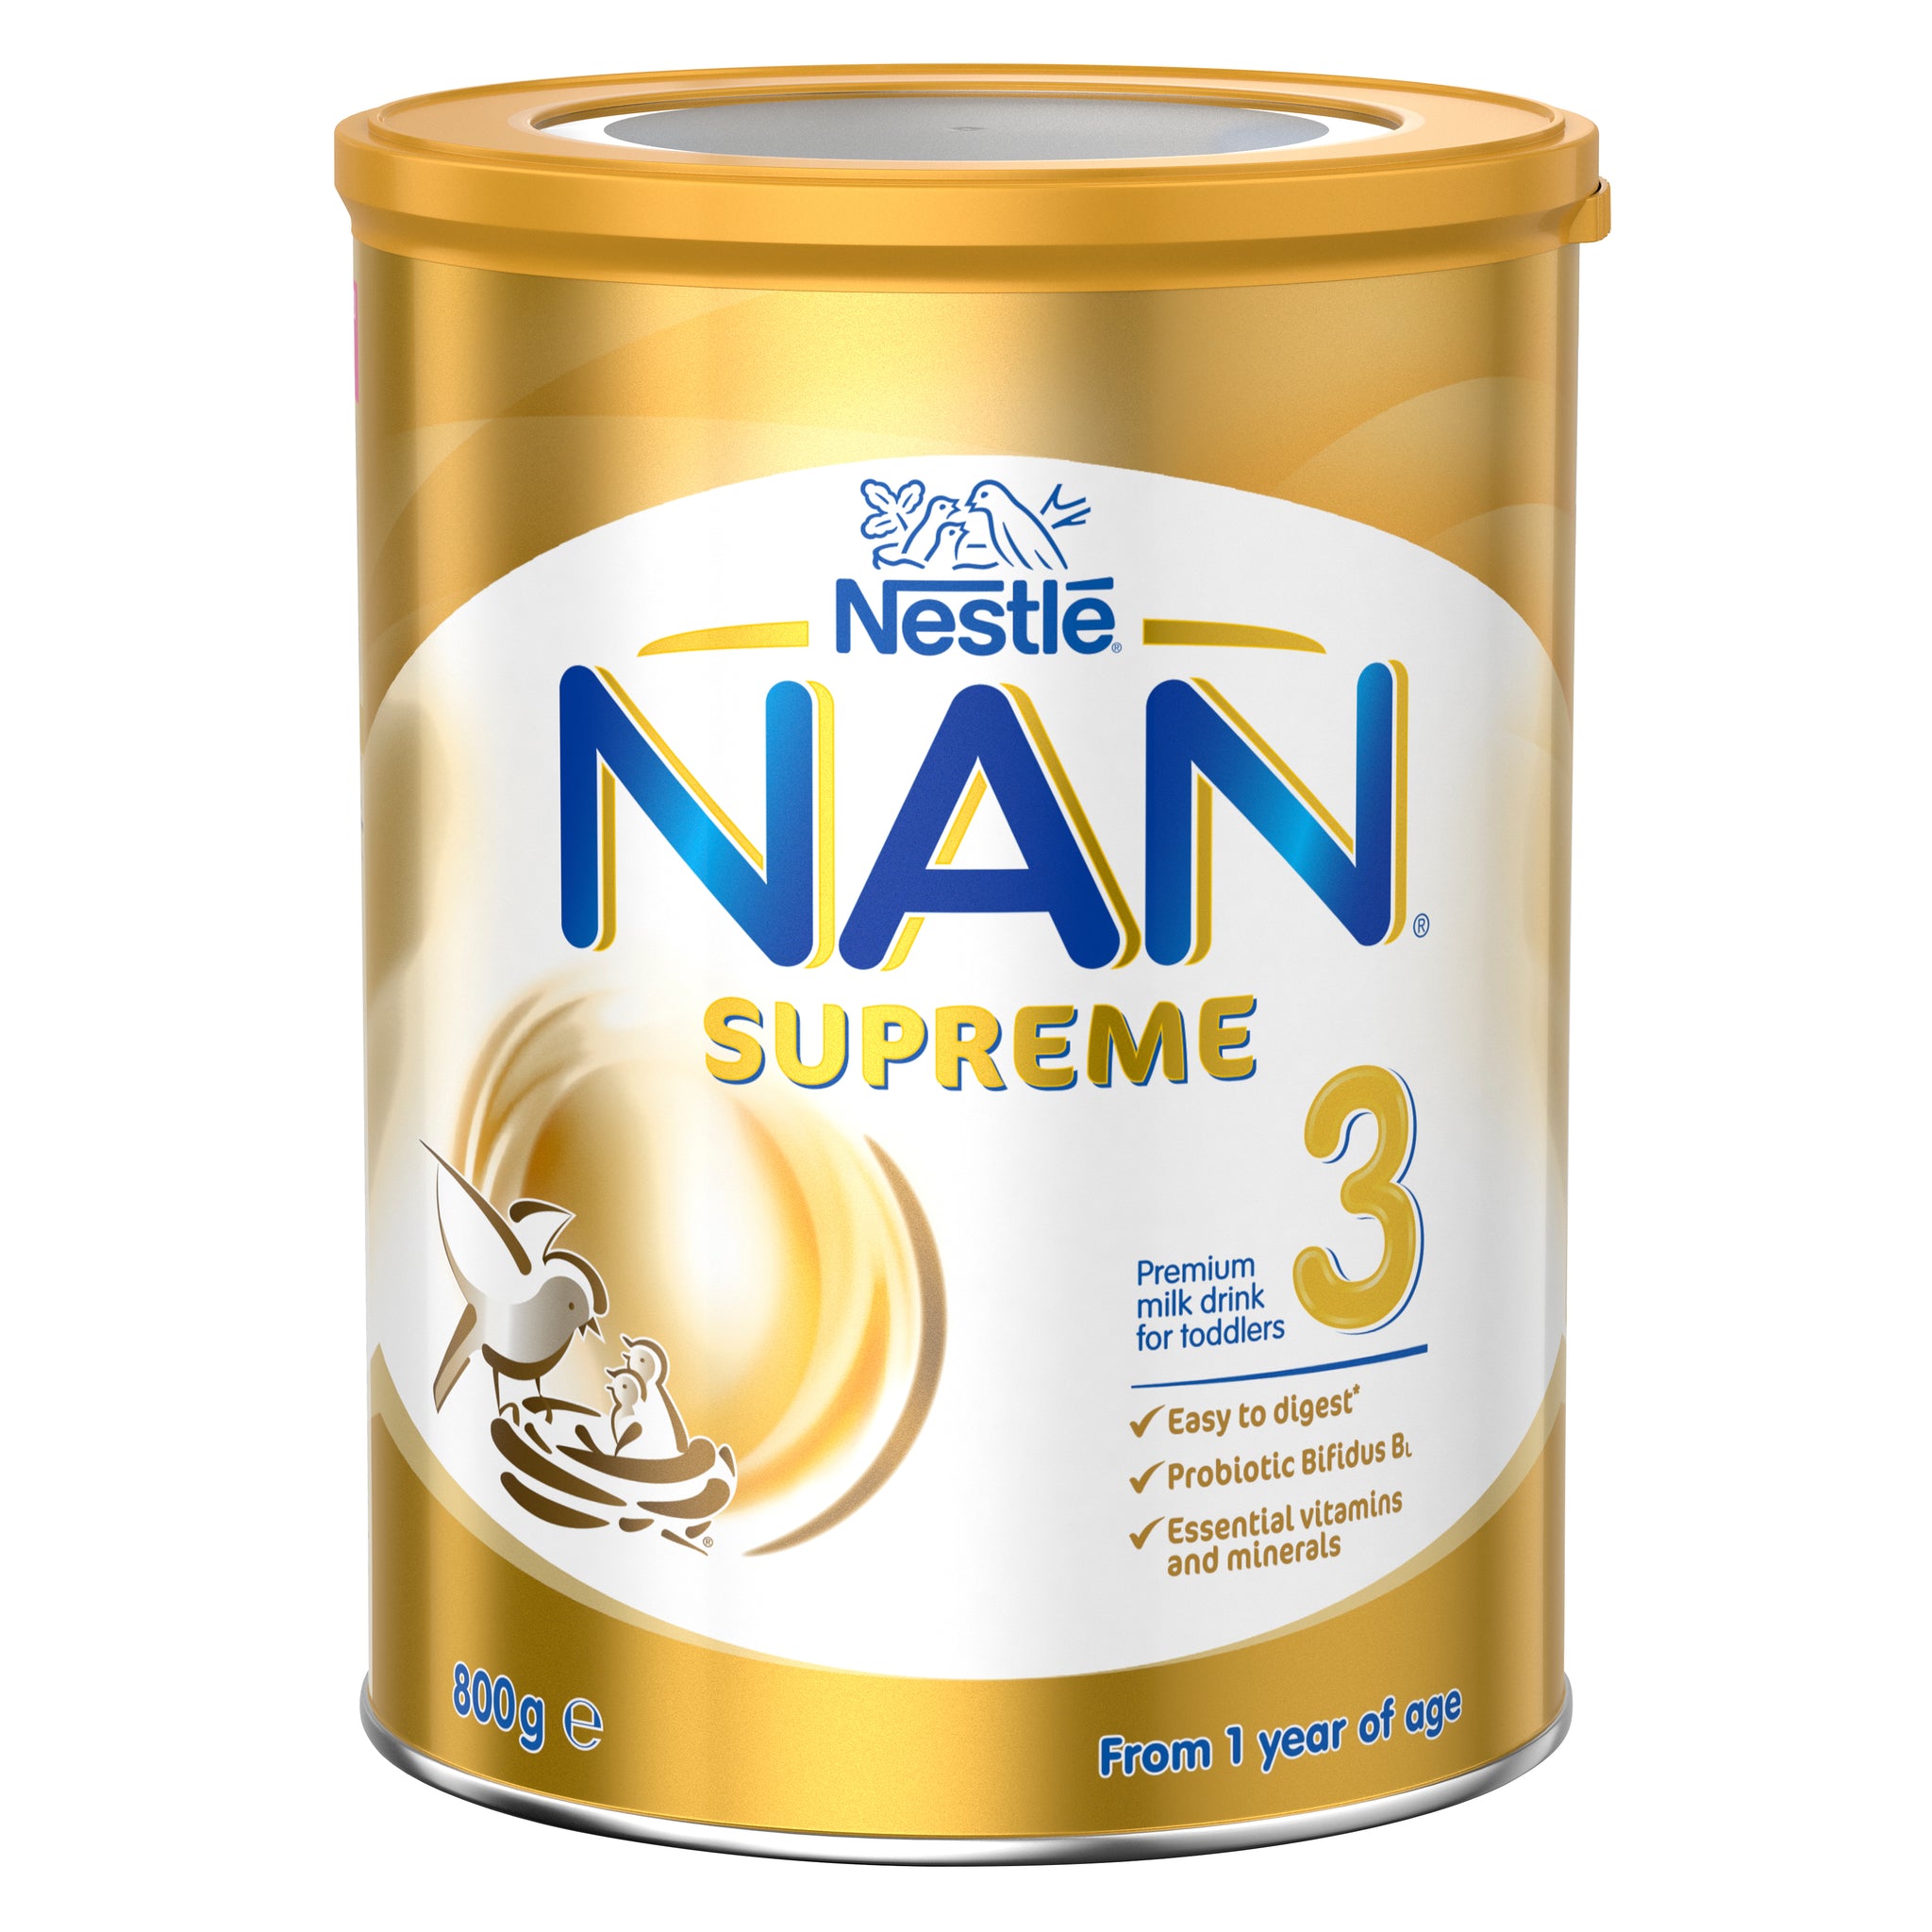 NAN Supreme 3 - 800g | Nestlé Baby Store